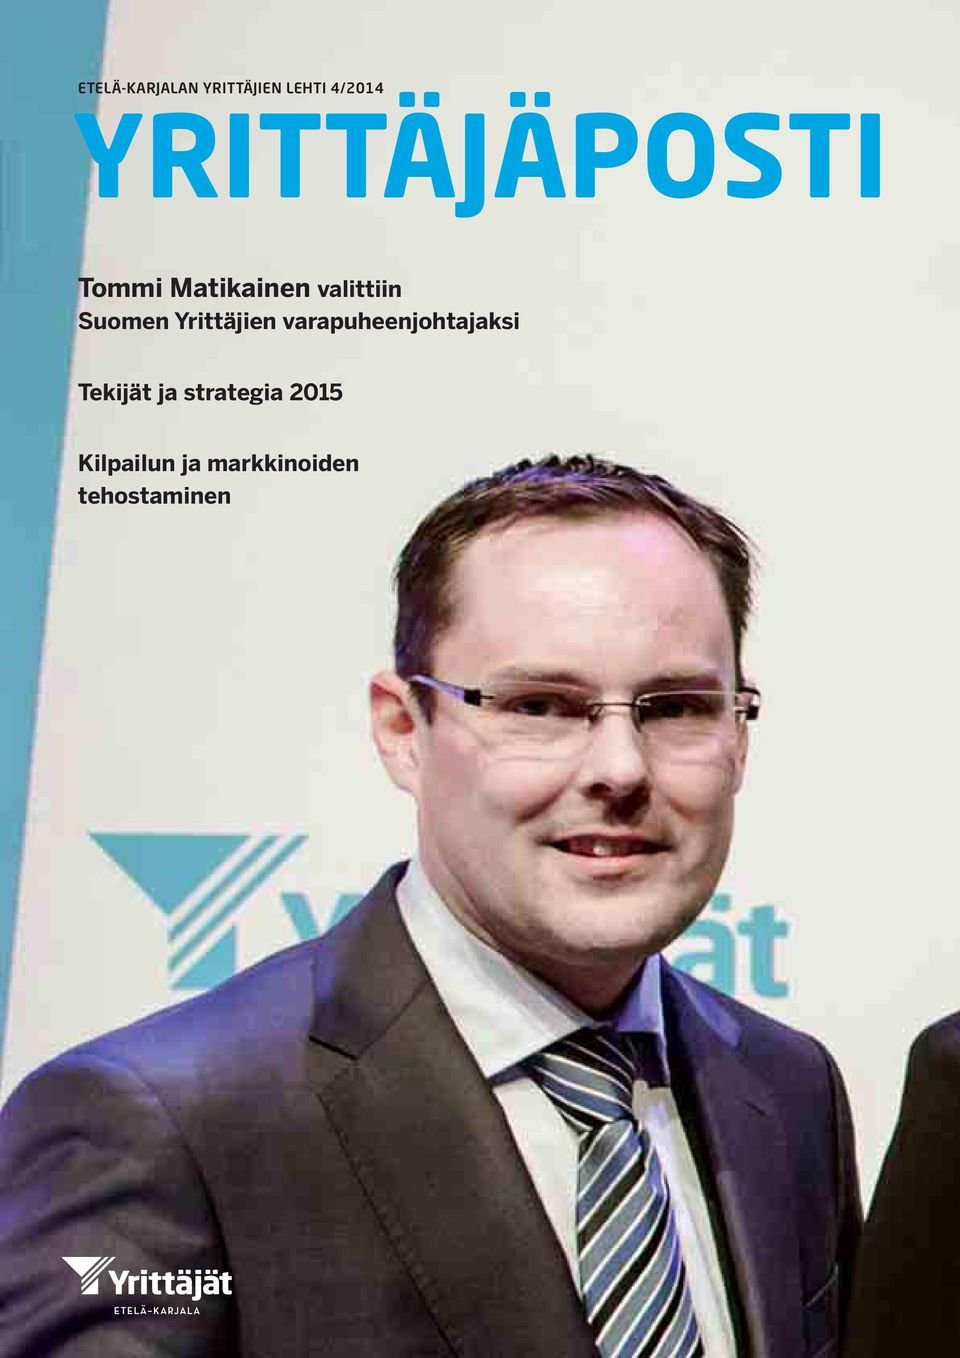 Suomen Yrittäjien varapuheenjohtajaksi